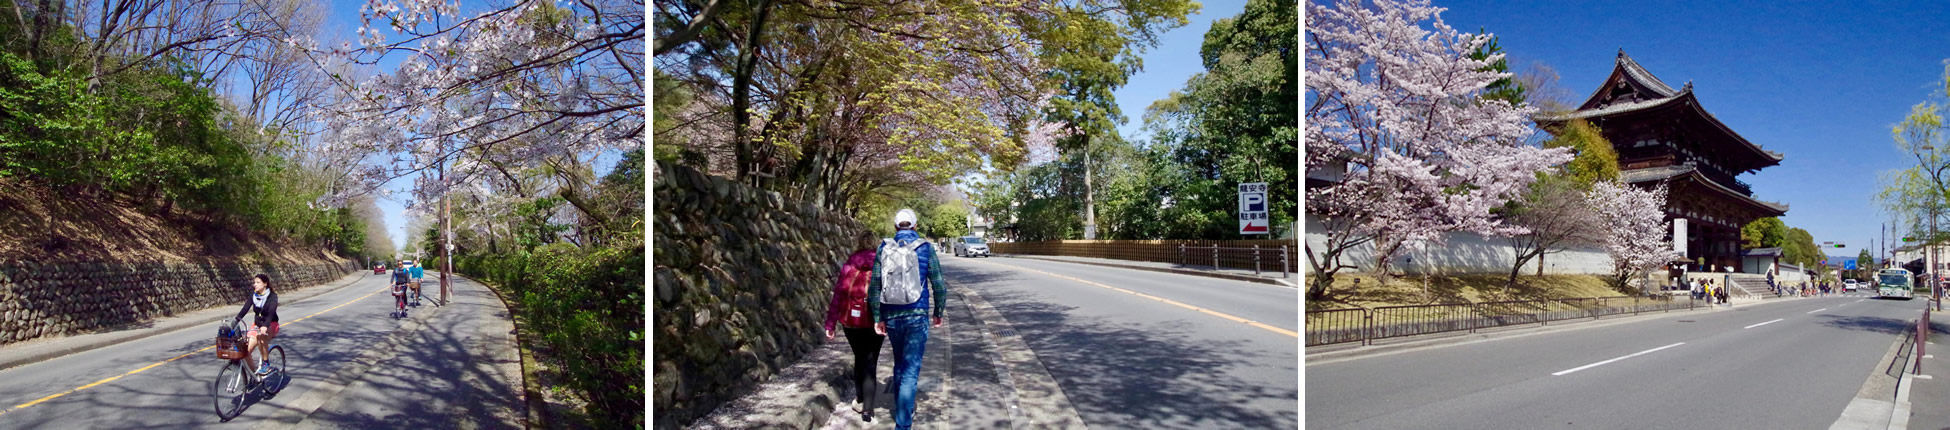 金閣寺から龍安寺へ抜けるきぬかけの路をたくさんの観光客が歩いていました。春や秋の天気の良い日でしたら歩いて行くのもおすすめです。